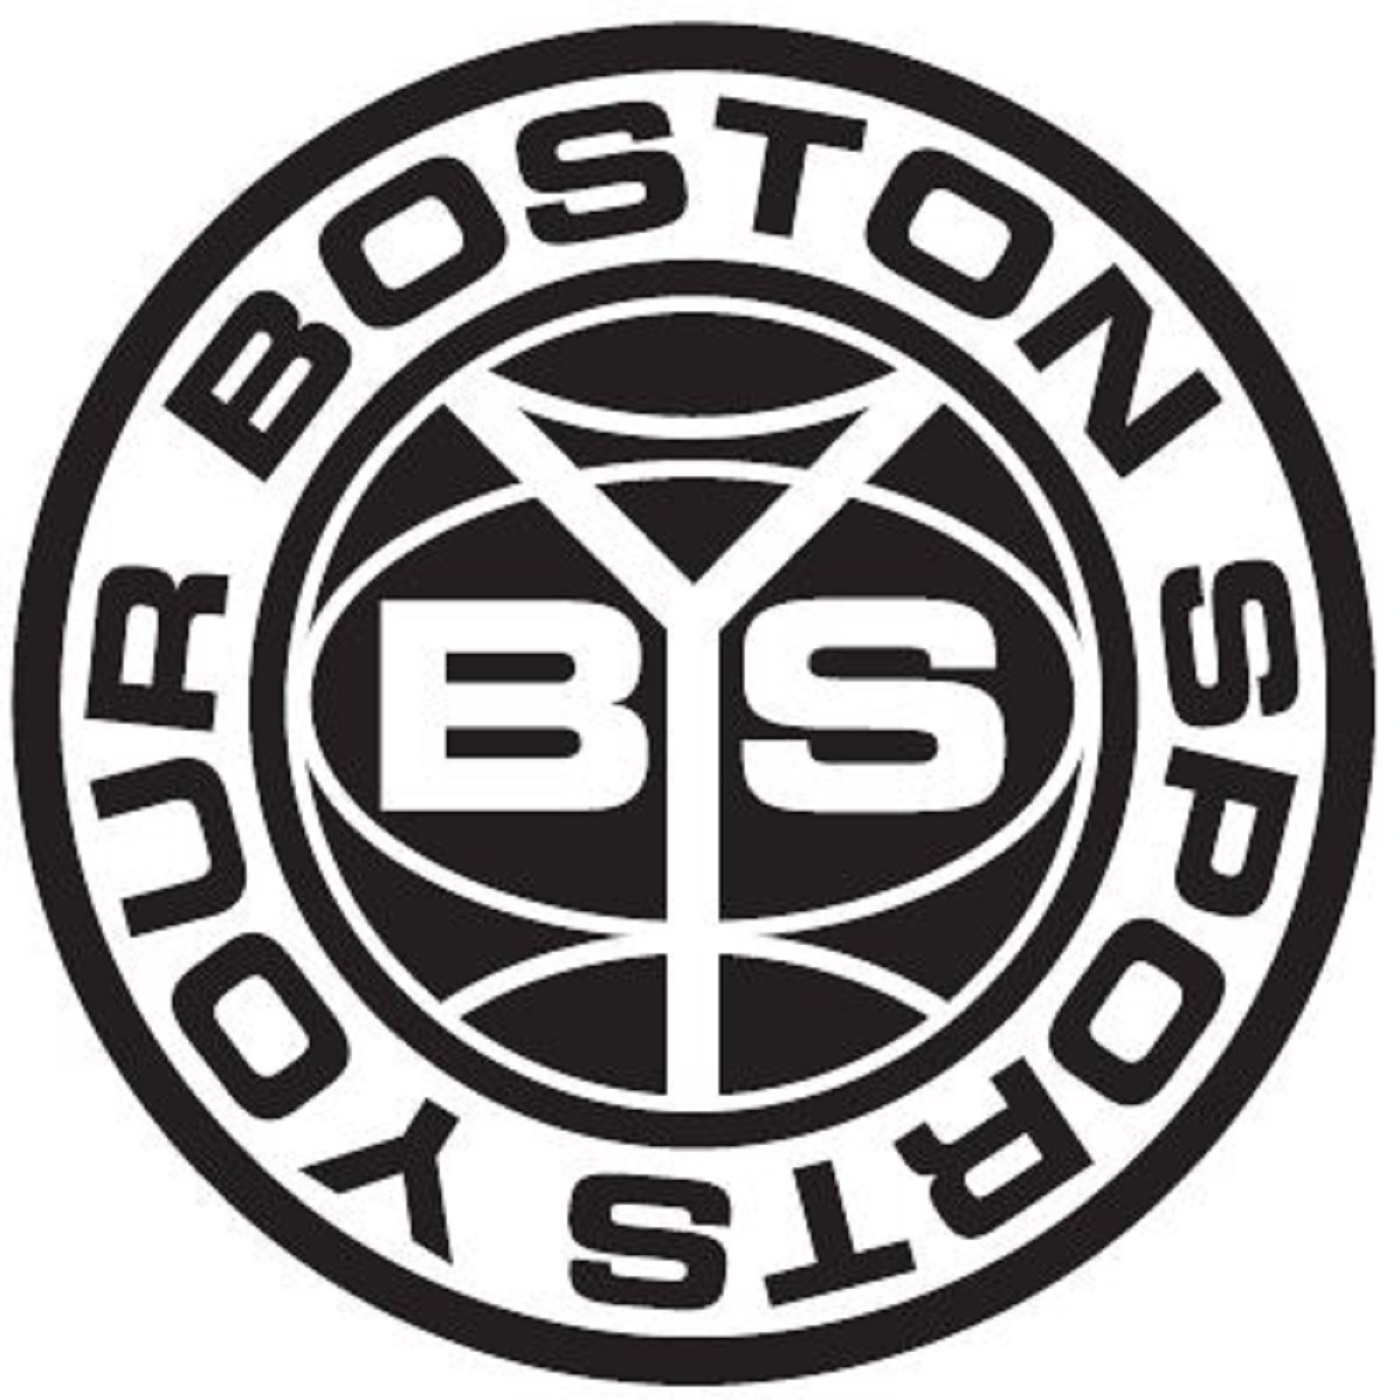 Your Boston Sports